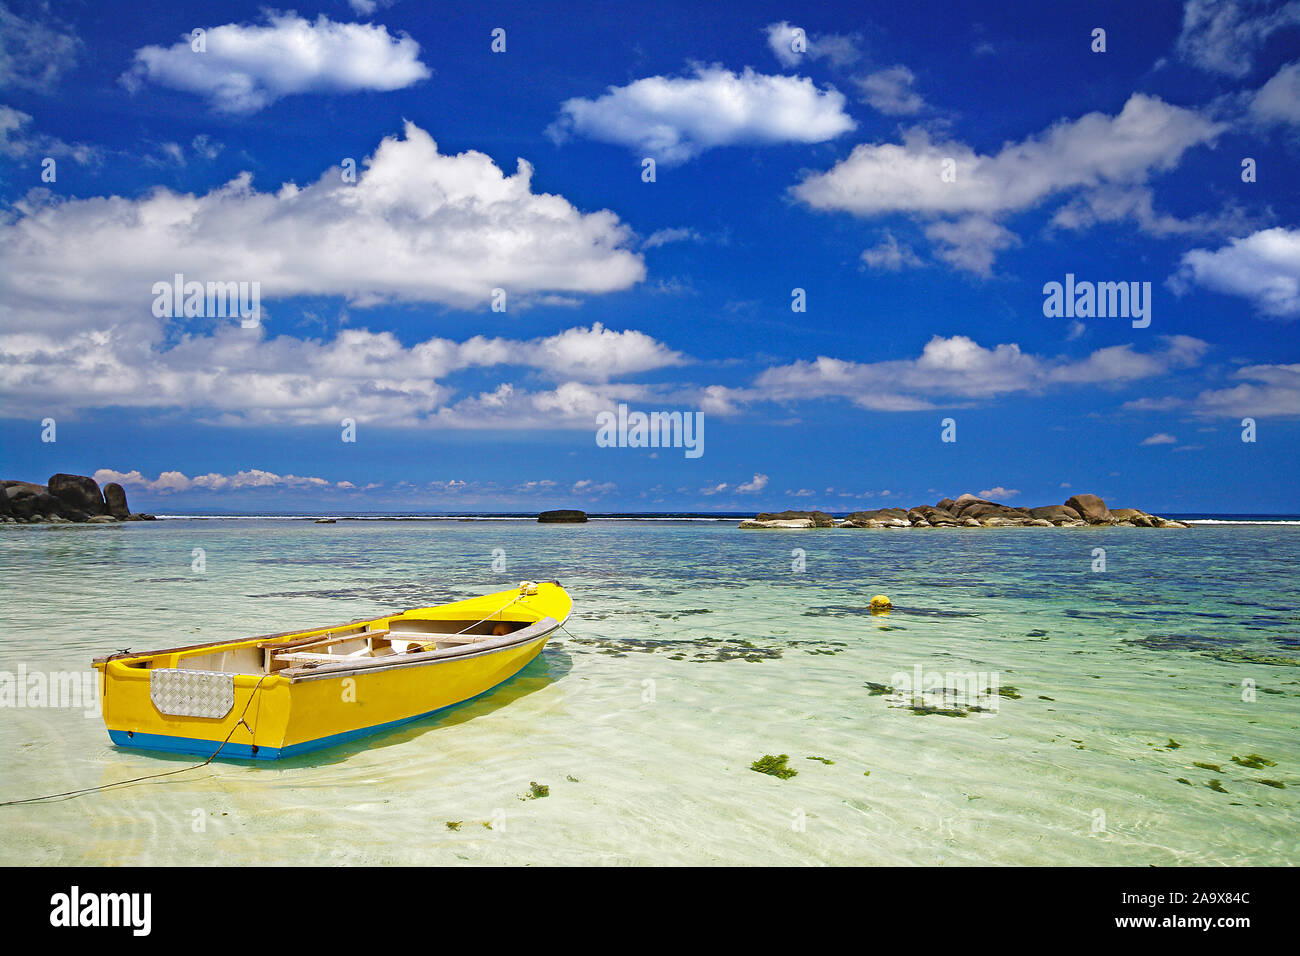 Buntes gelbes traditionelles Fischerboot am Strand der Anse Forbans, An der Südostküste tropisches Inselparadies der Hauptinsel Mahe, indischer Ozean, Foto de stock